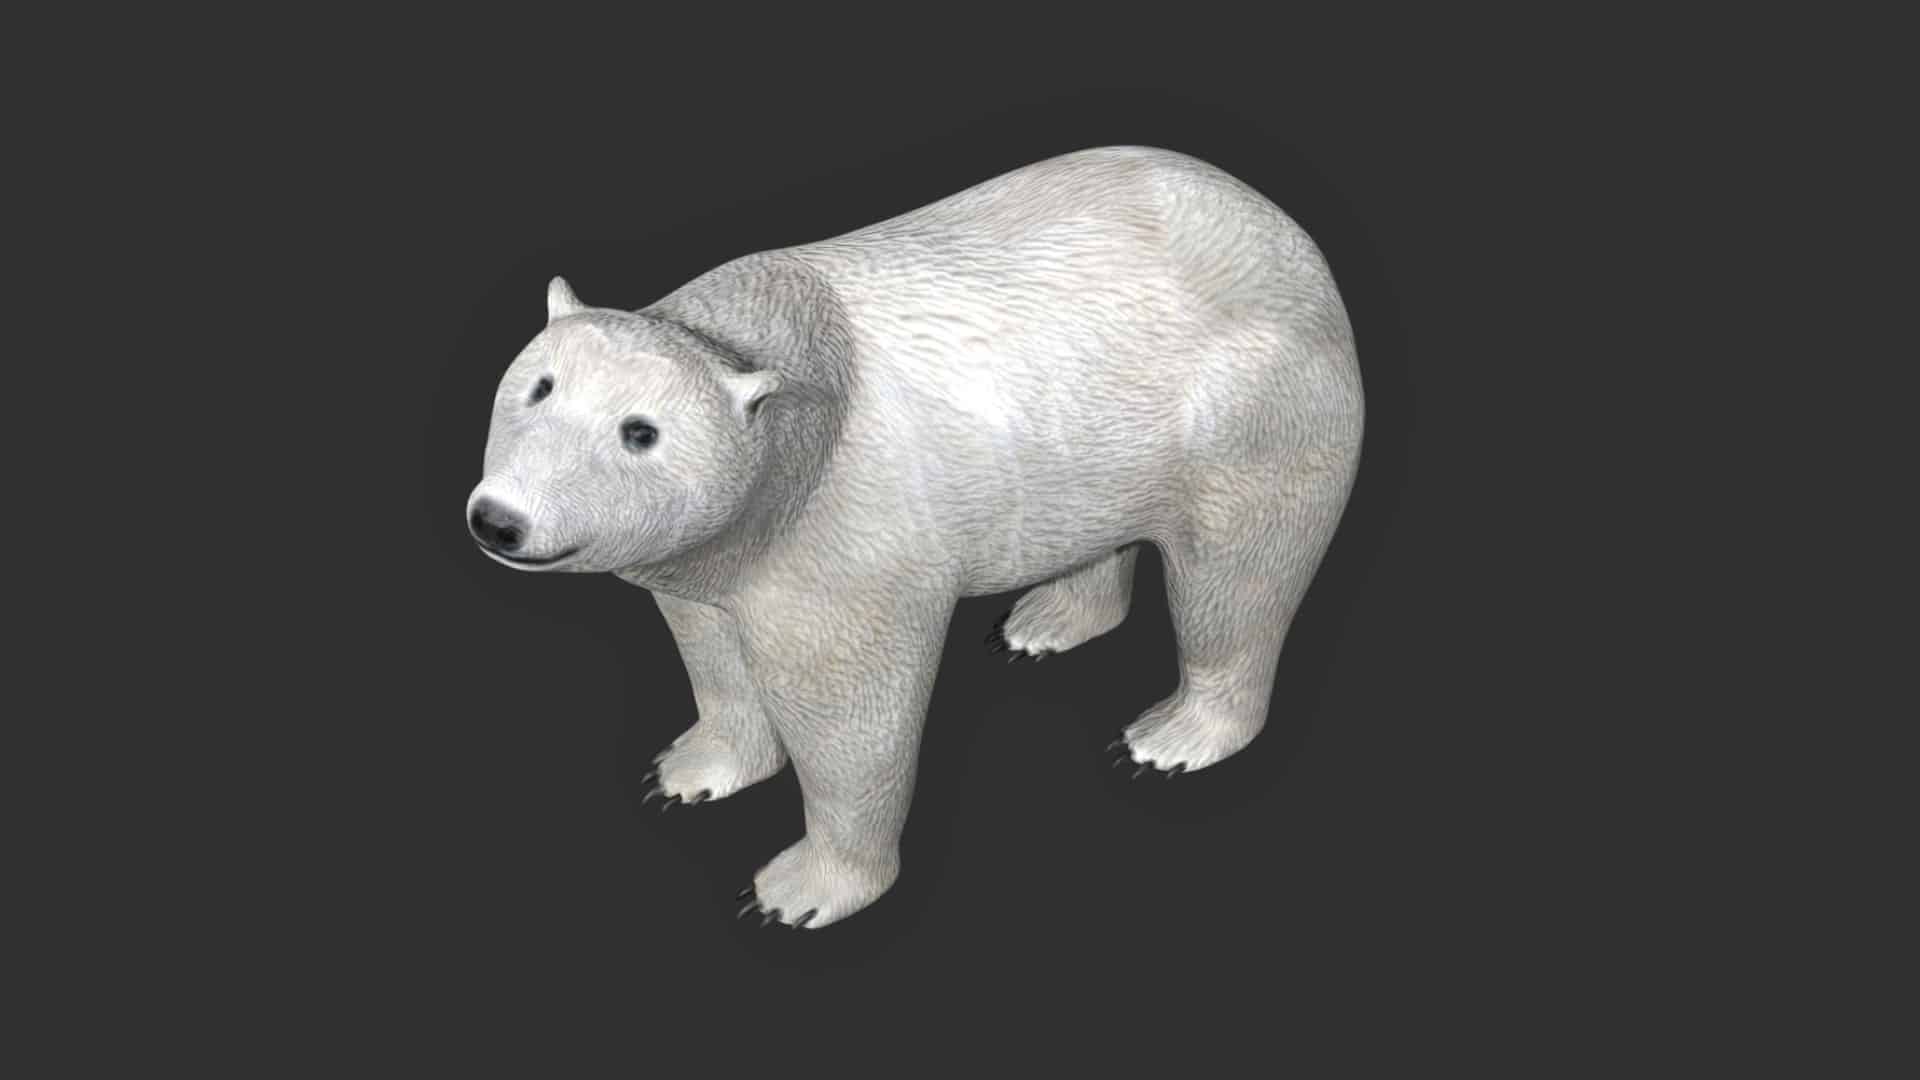 Bear Blender Models for Download